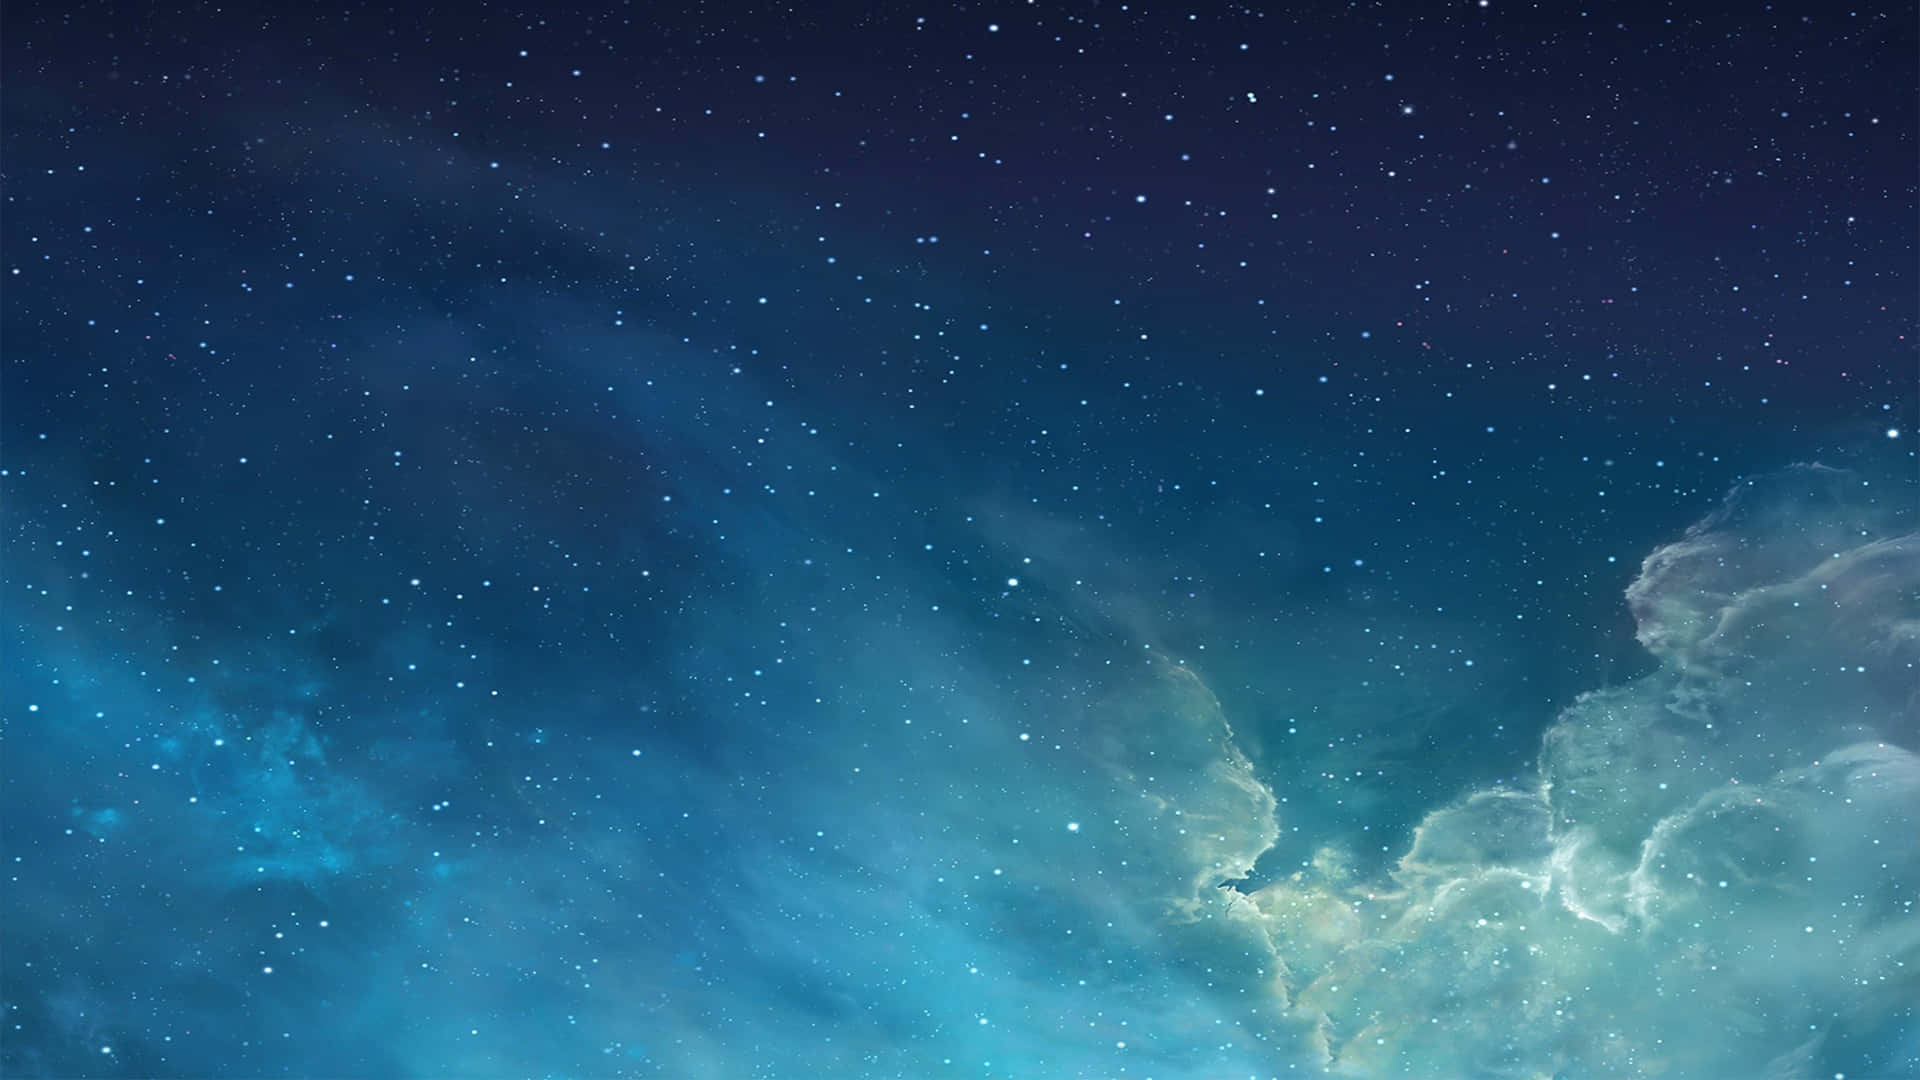 Enbild Av En Iphone Med En Blå Himmel Och Stjärnor. Wallpaper